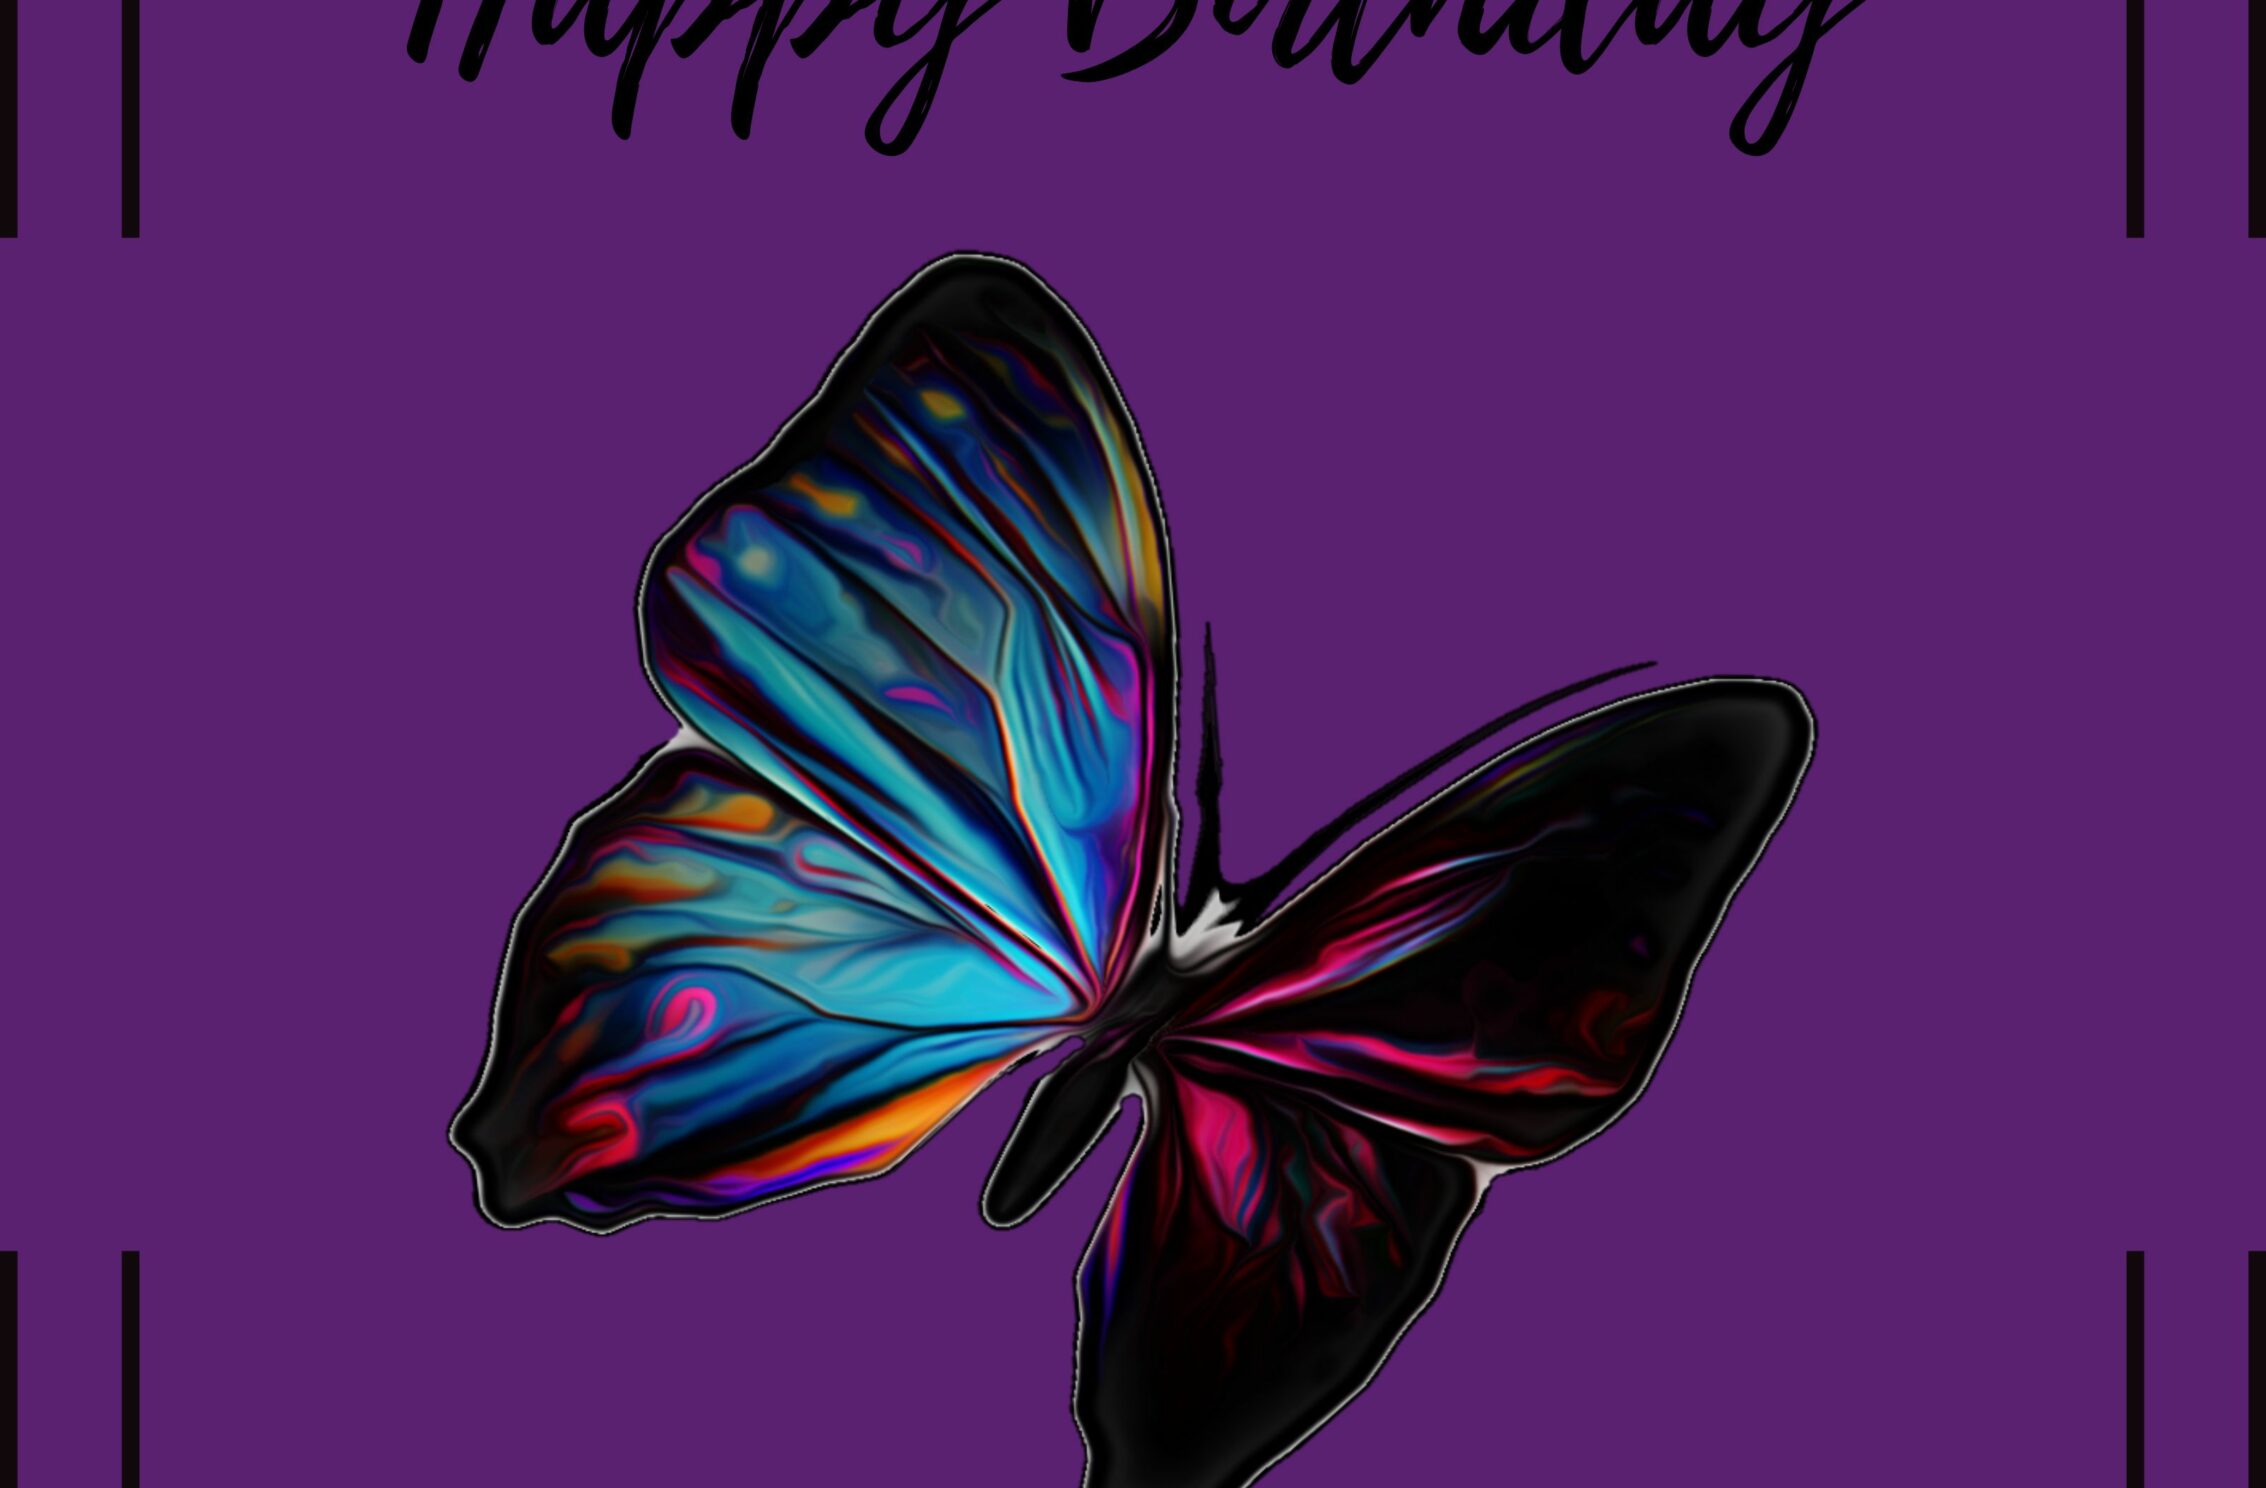 2266x1488 iPad Mini wallpapers Happy Birthday Rainbow Butterfly Ipad Wallpaper 2266x1488 pixels resolution